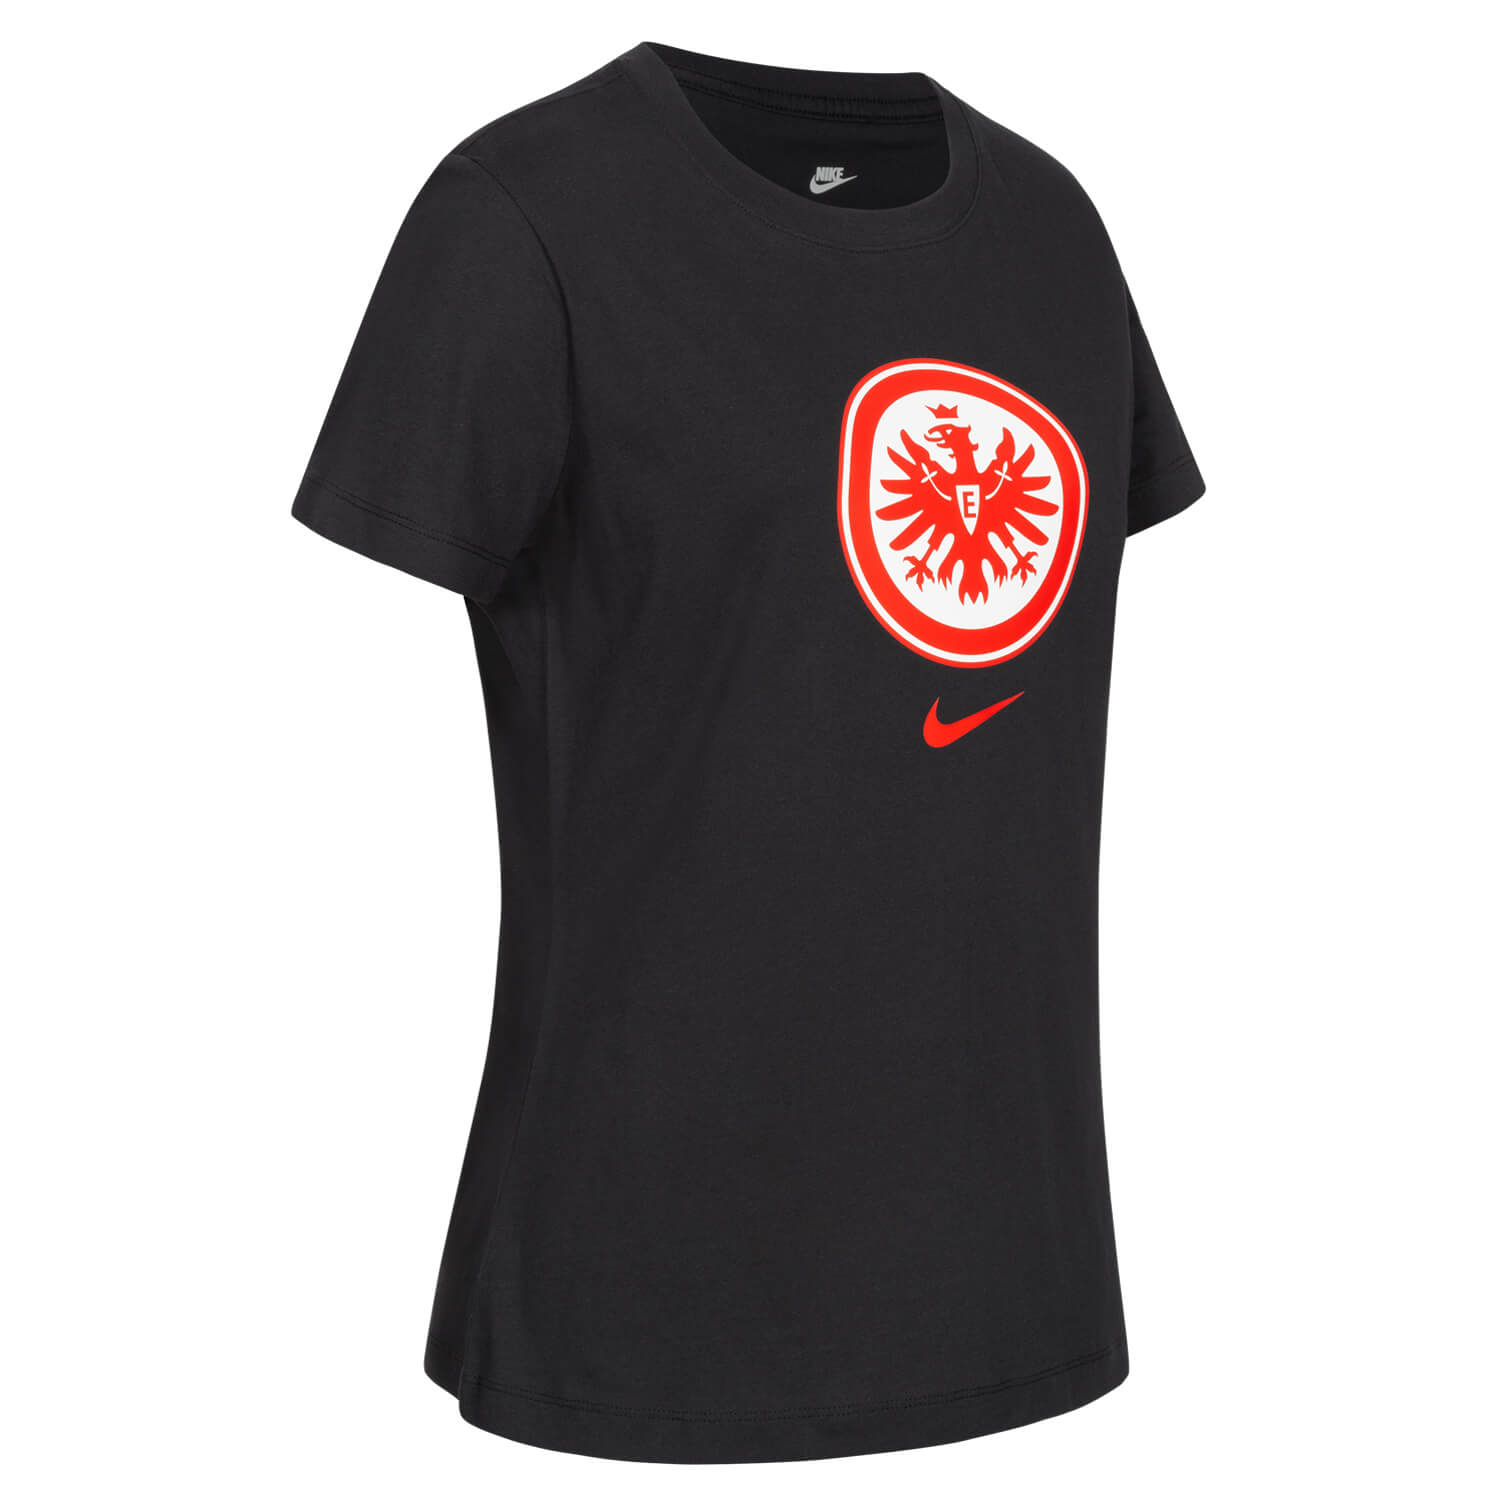 Bild 4: Nike Damen T-Shirt 23 Schwarz